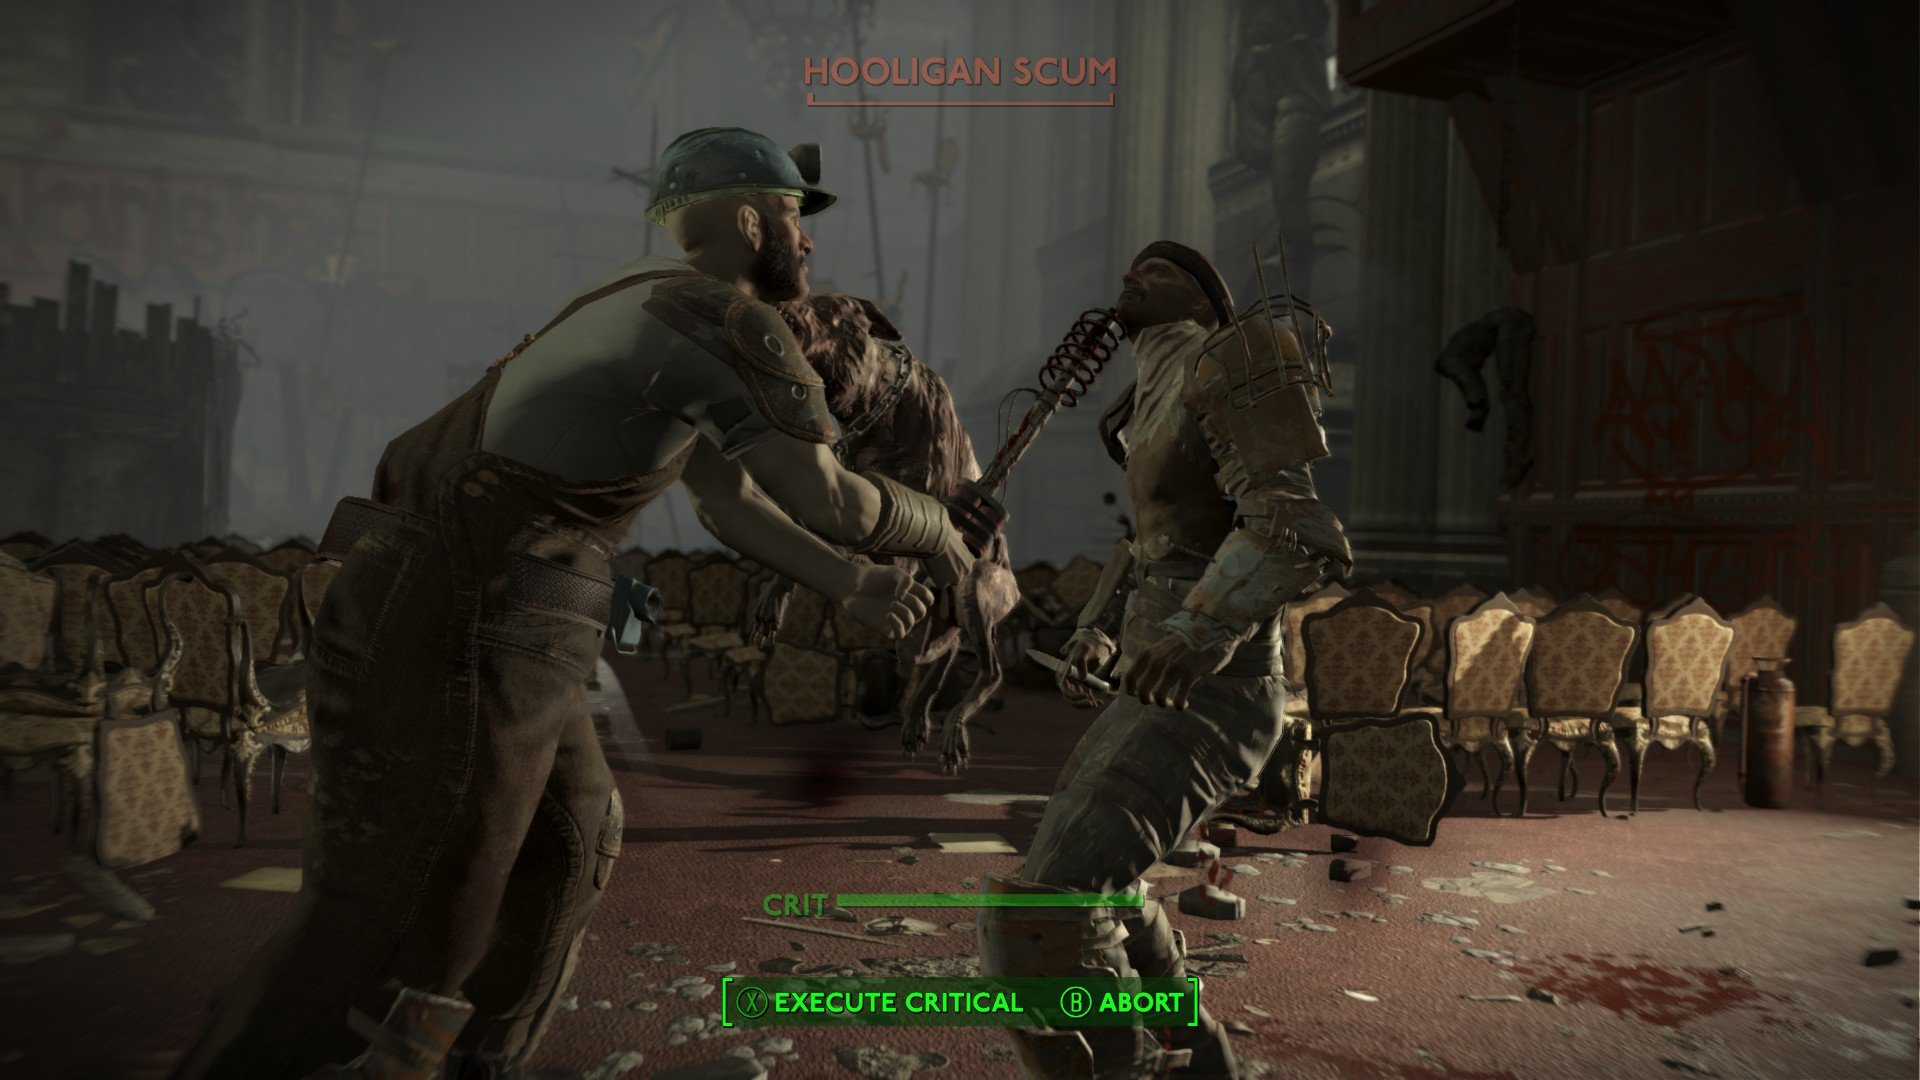 Fallout London incelemesi: Kahramanın kör bir silahla düşmanının kafasına vurduğu üçüncü şahıs VATS görünümü.